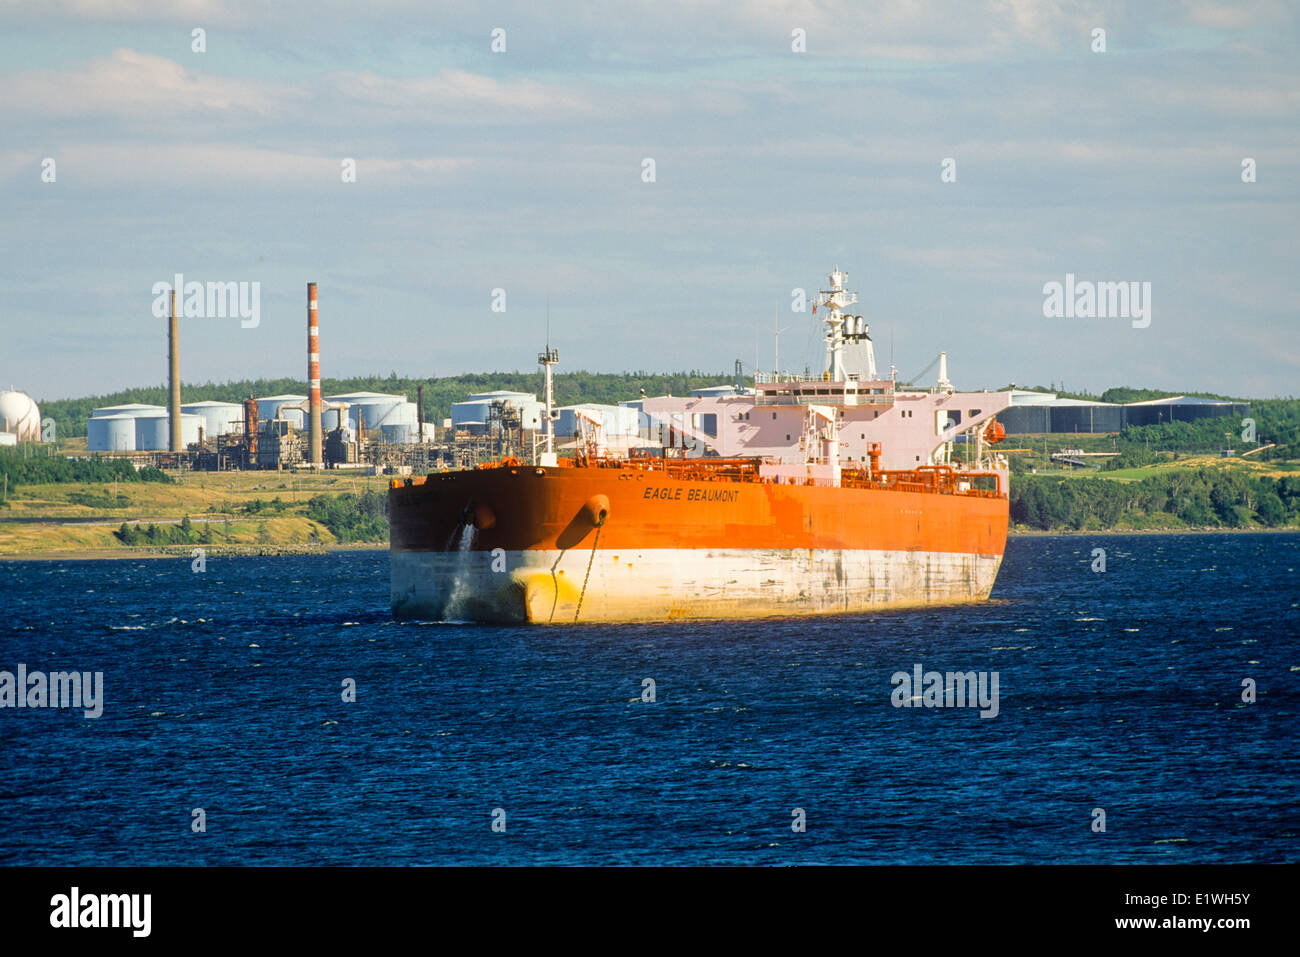 Oil tanker, Port Hawkesbury, Cape Breton, Nova Scotia, Canada Stock Photo